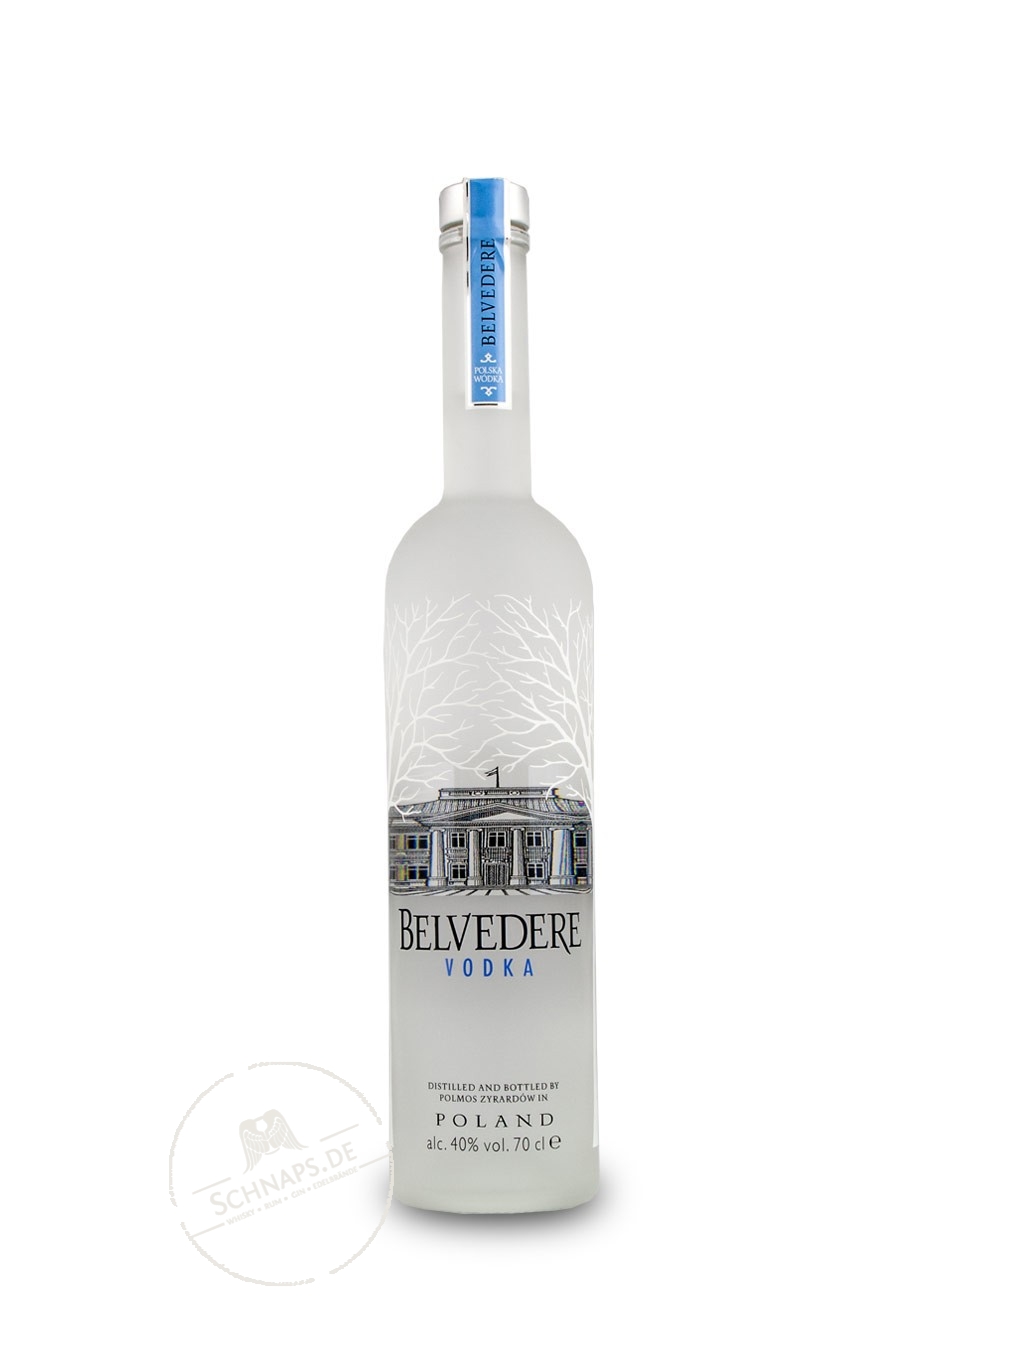 https://www.schnaps.de/trinkkontor/wp-content/uploads/2022/04/3301057-Spirituosede-Belvedere-Vodka.jpg